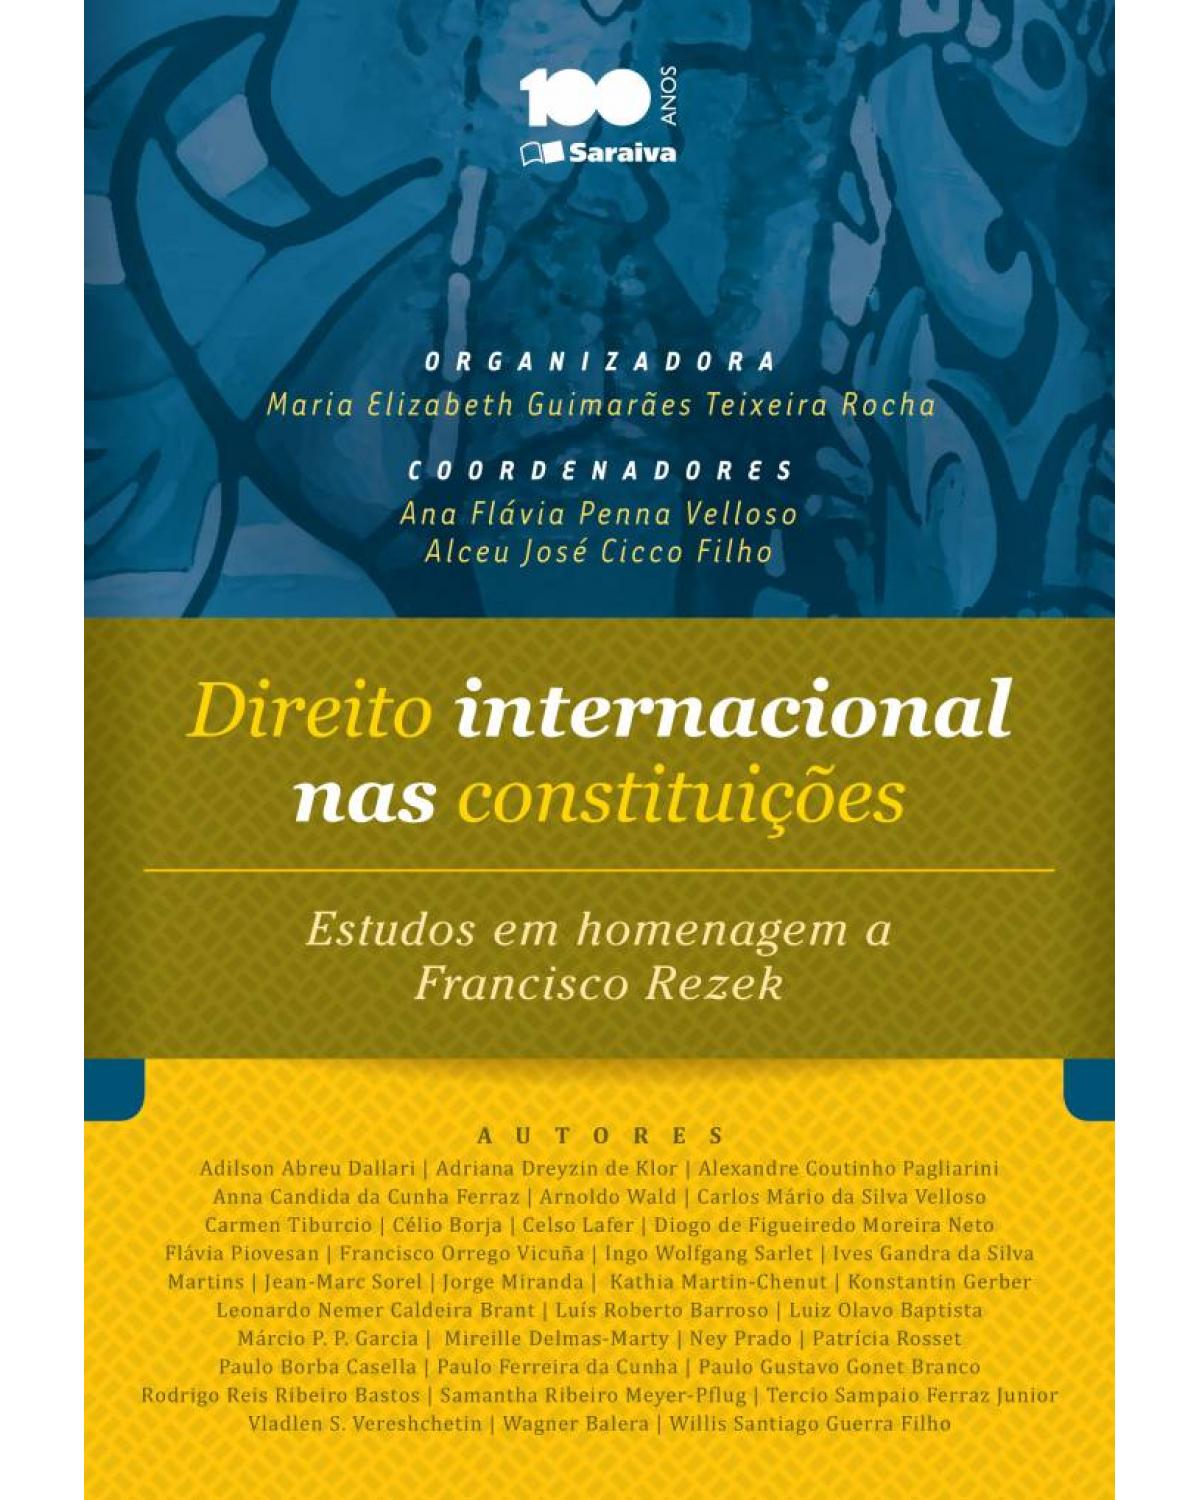 Direito internacional nas constituições - estudos em homenagem a Francisco Rezek - 1ª Edição | 2013